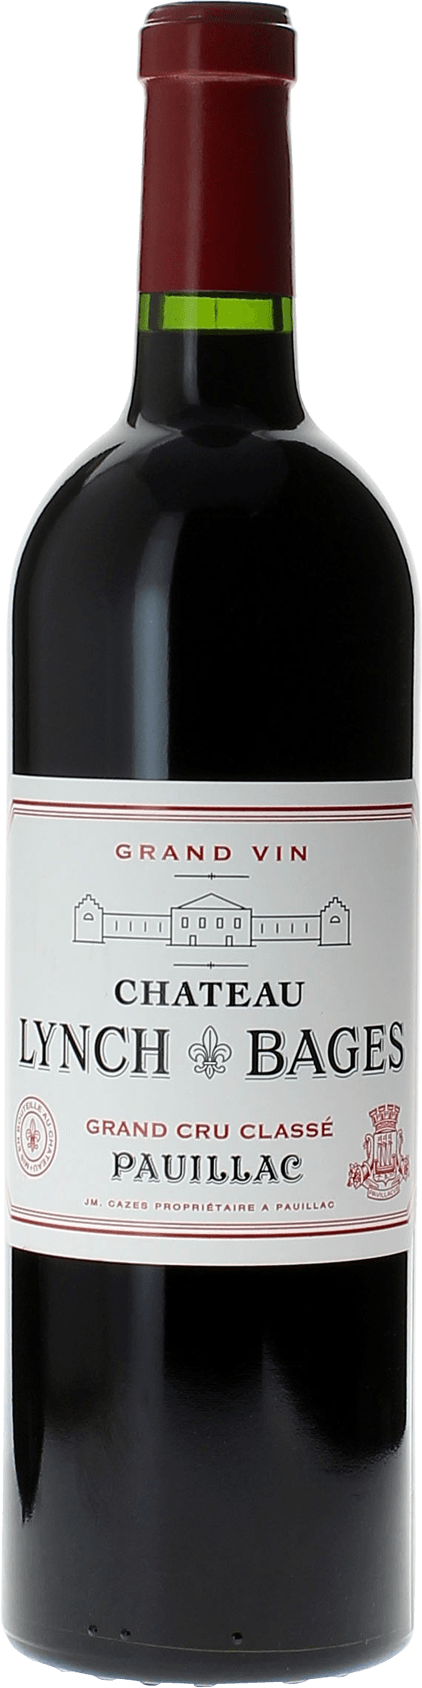 Lynch bages 1996 5 me Grand cru class Pauillac, Bordeaux rouge